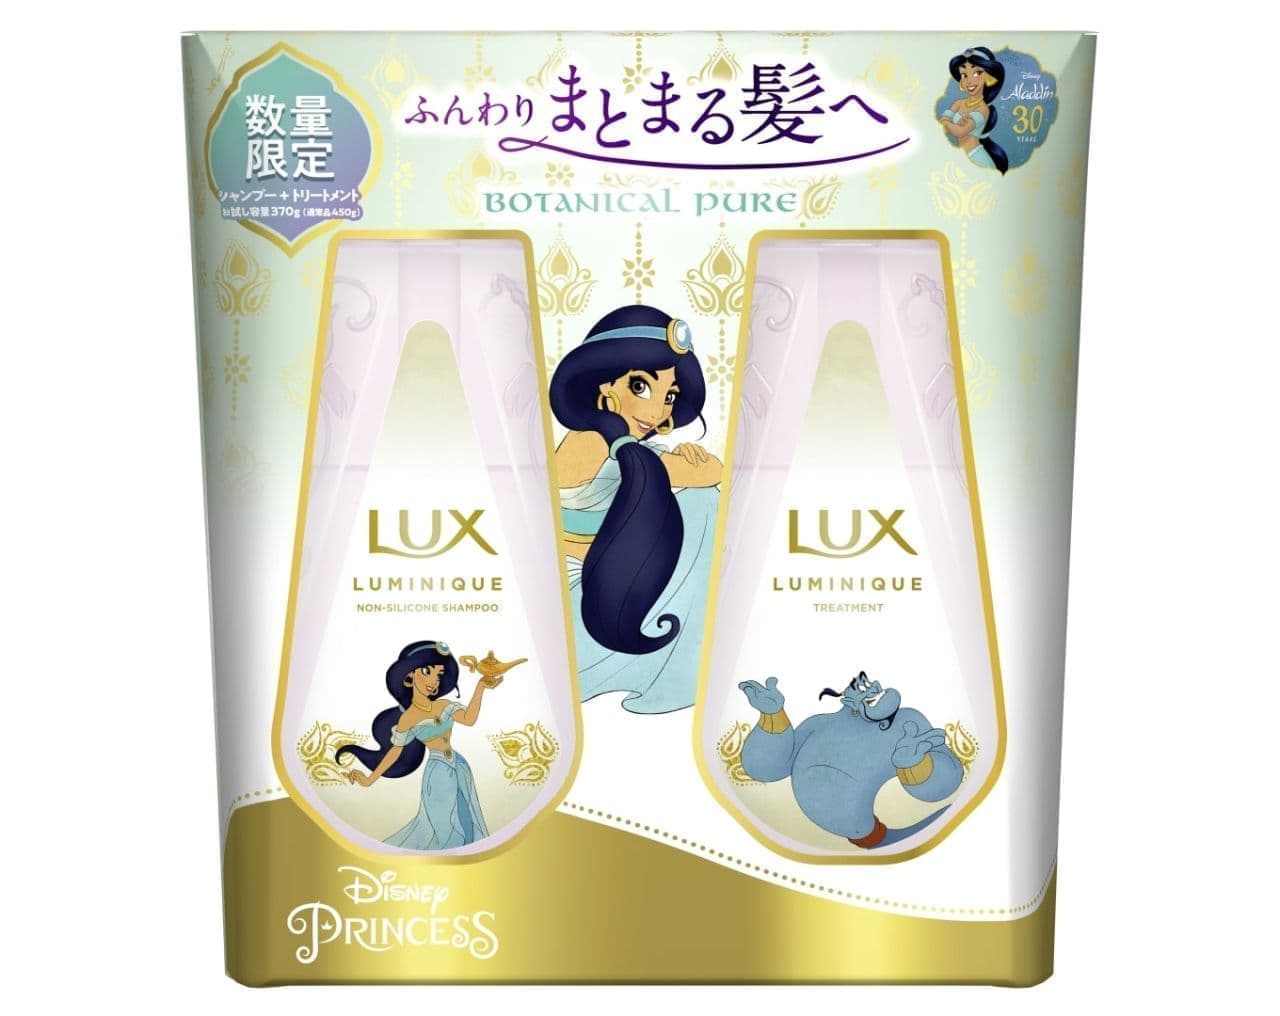 Lux Luminique Botanical Pure Aladdin Design Trial Volume Pump Pair